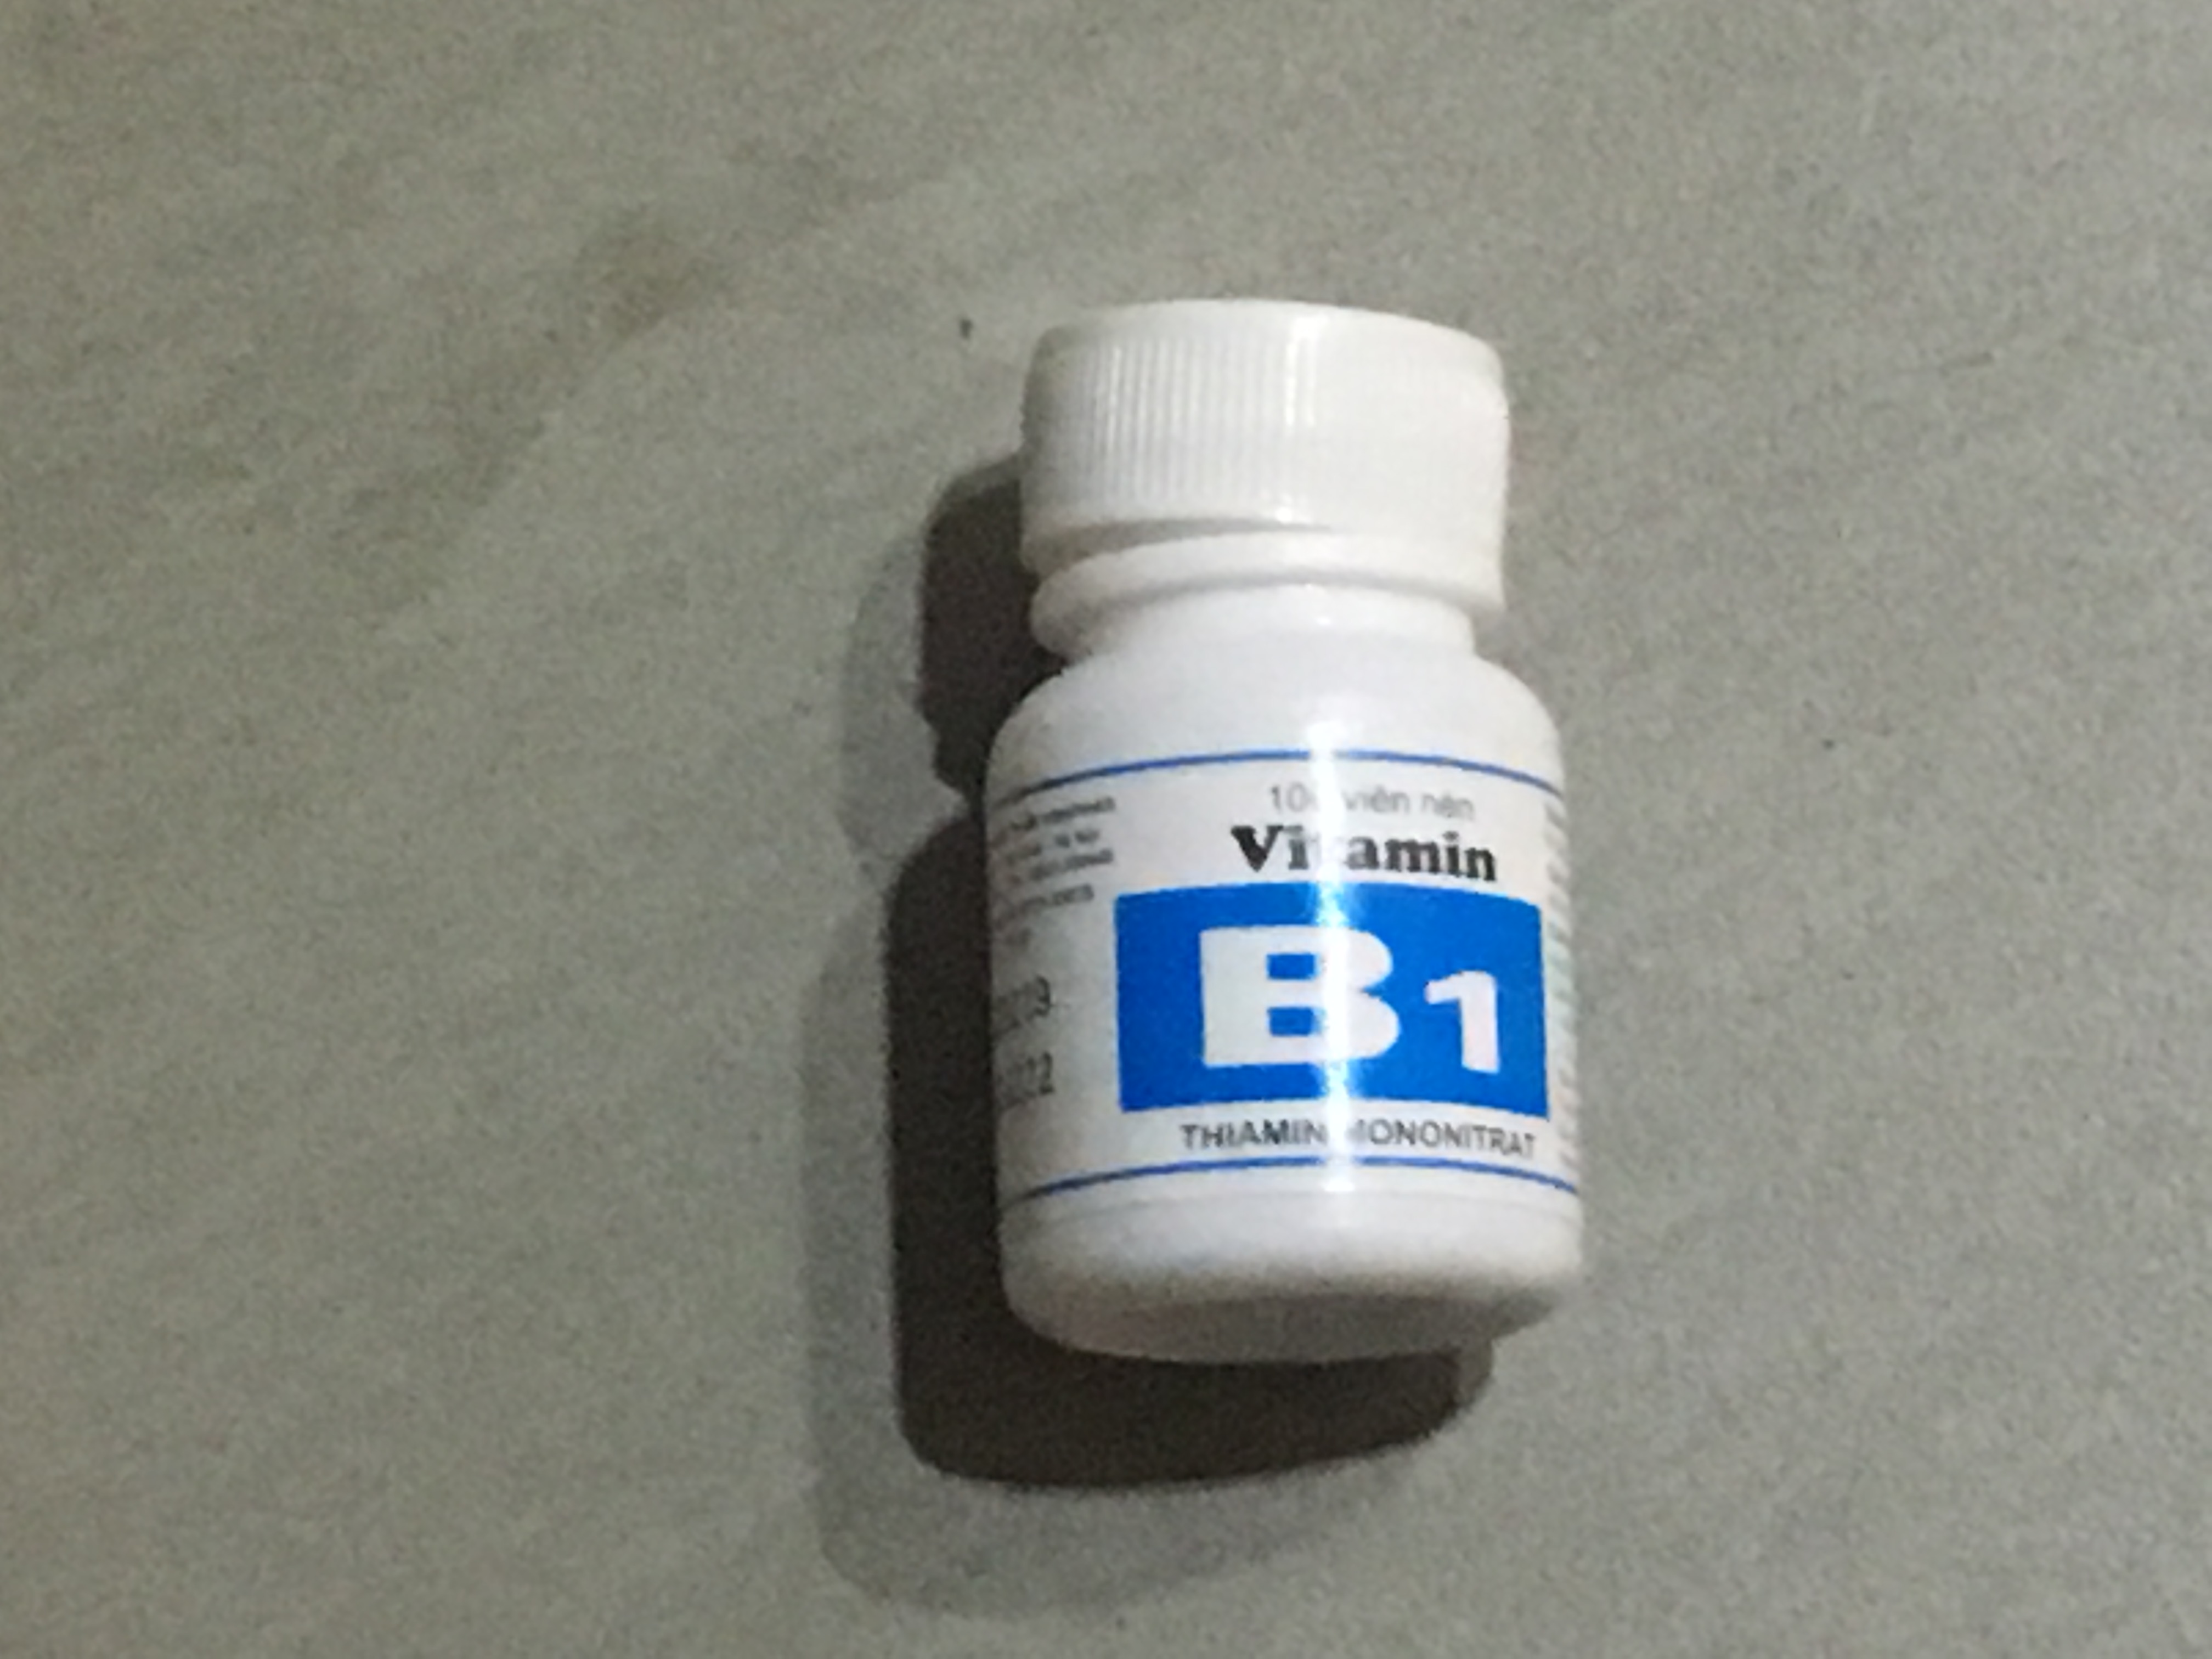 Có những loại vitamin B1 lọ nào được bán trên thị trường?